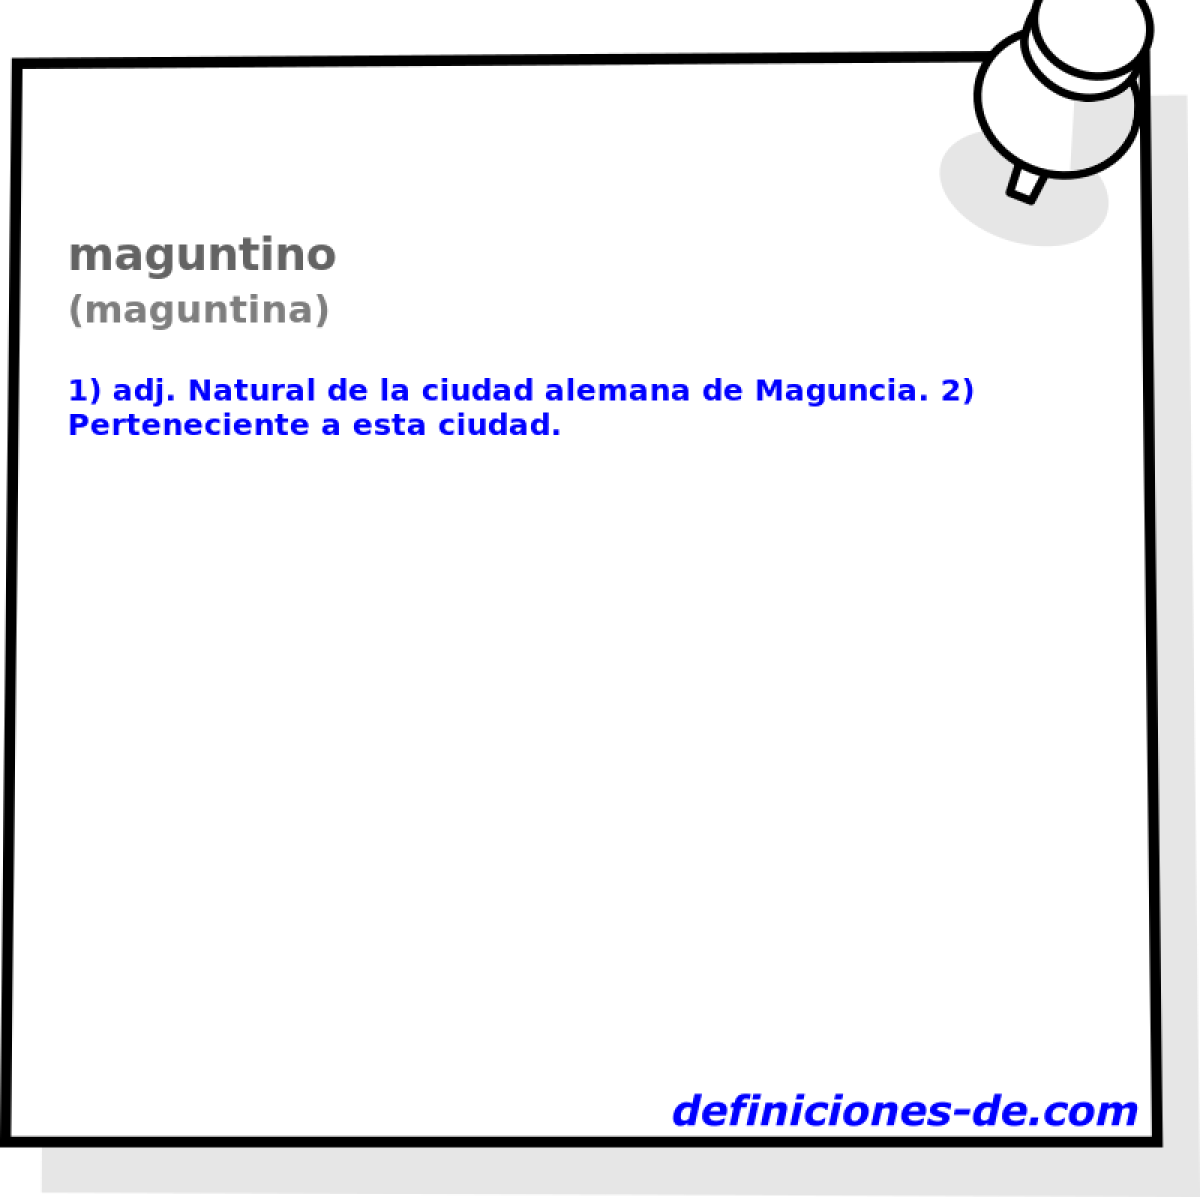 maguntino (maguntina)